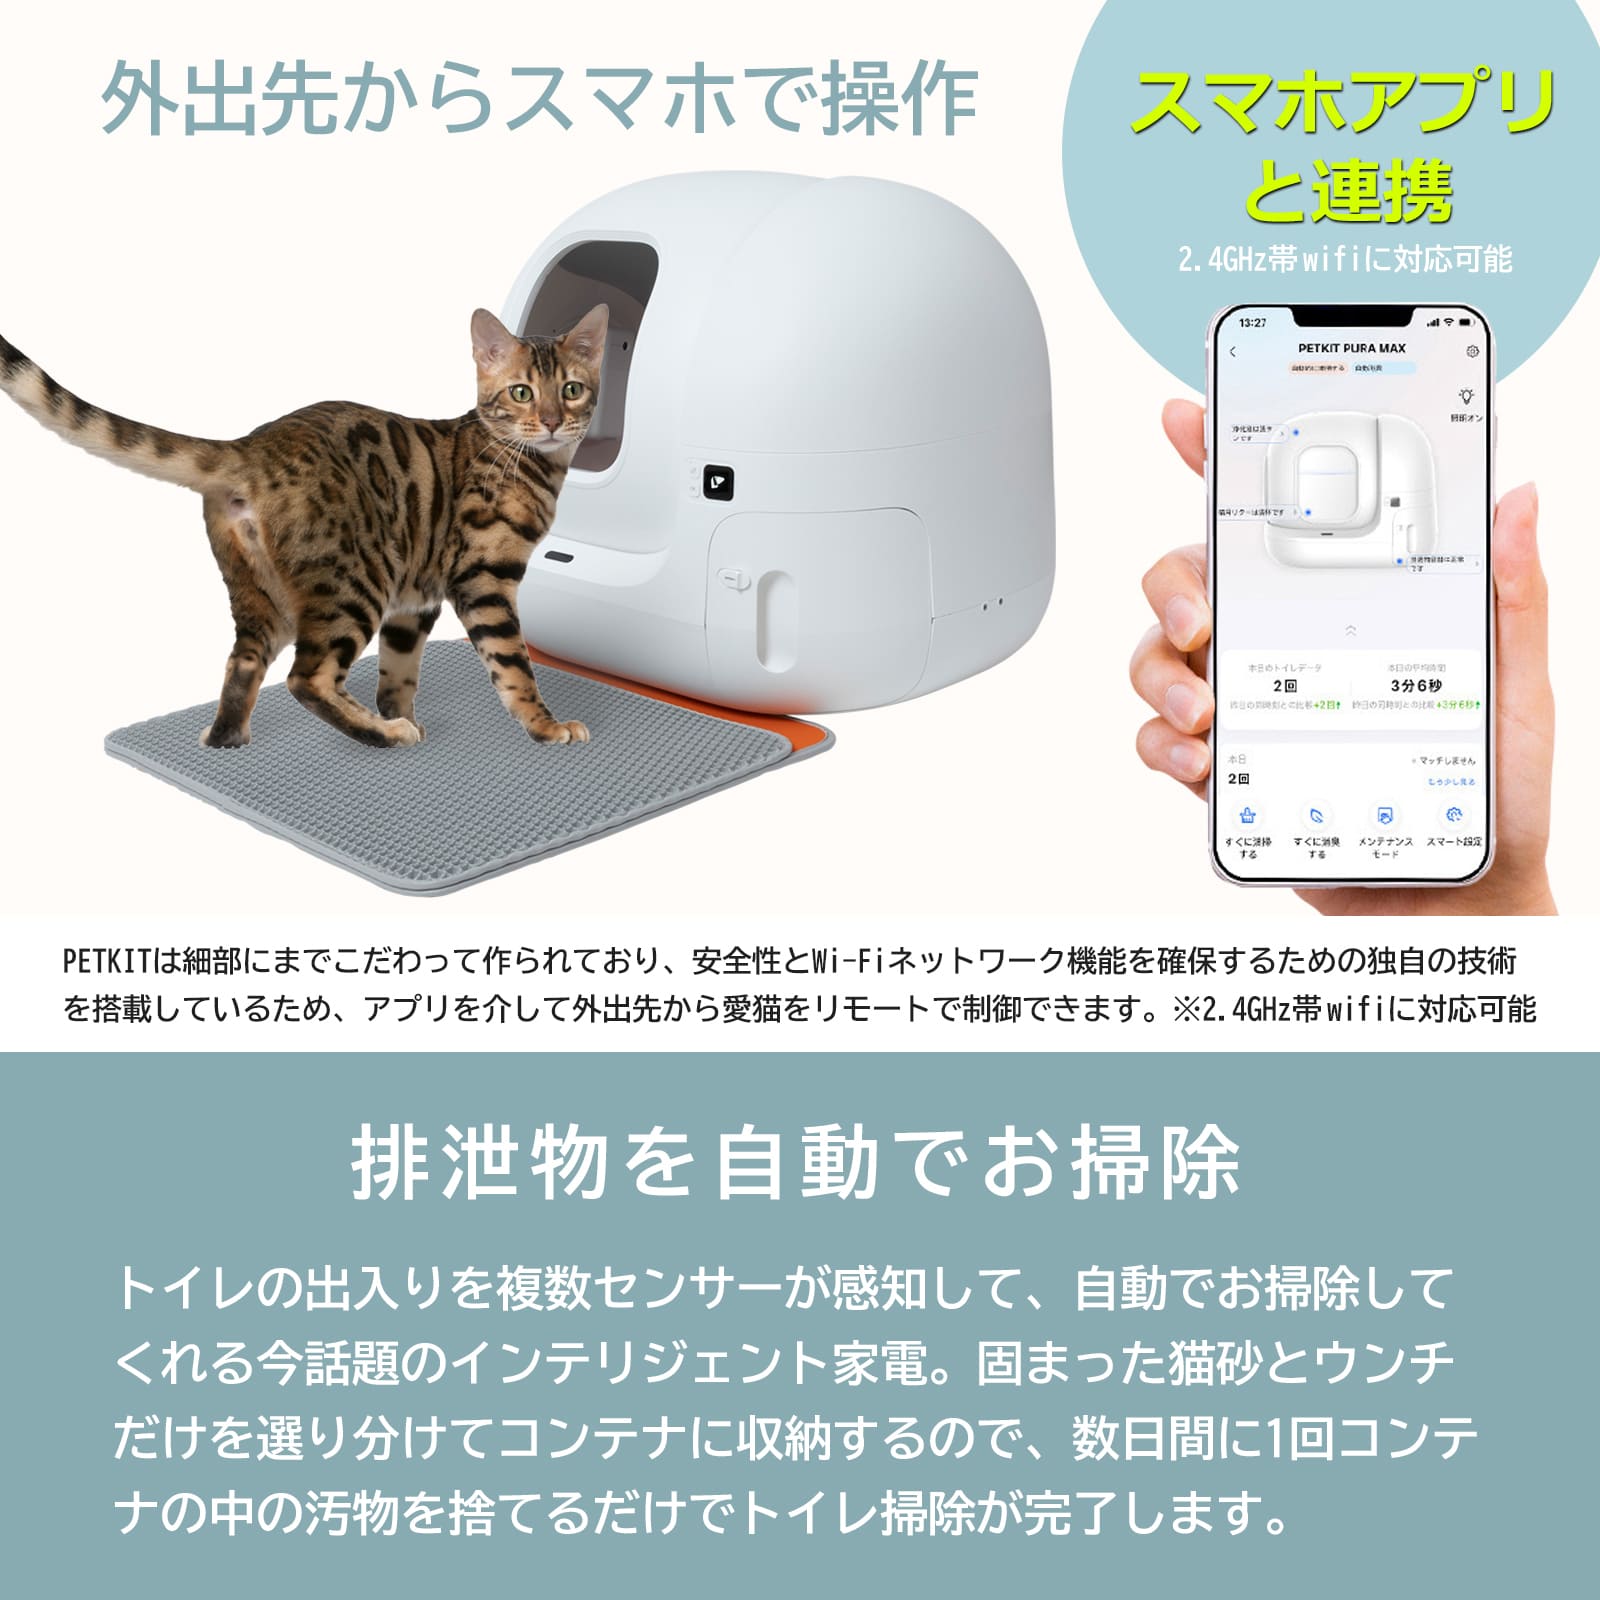 ７月下旬入荷予定【PETKIT-PURA-MAX (高級版) 】自動猫用トイレ ペットキット 自動ネコトイレ【正規品】【安心1年保証】